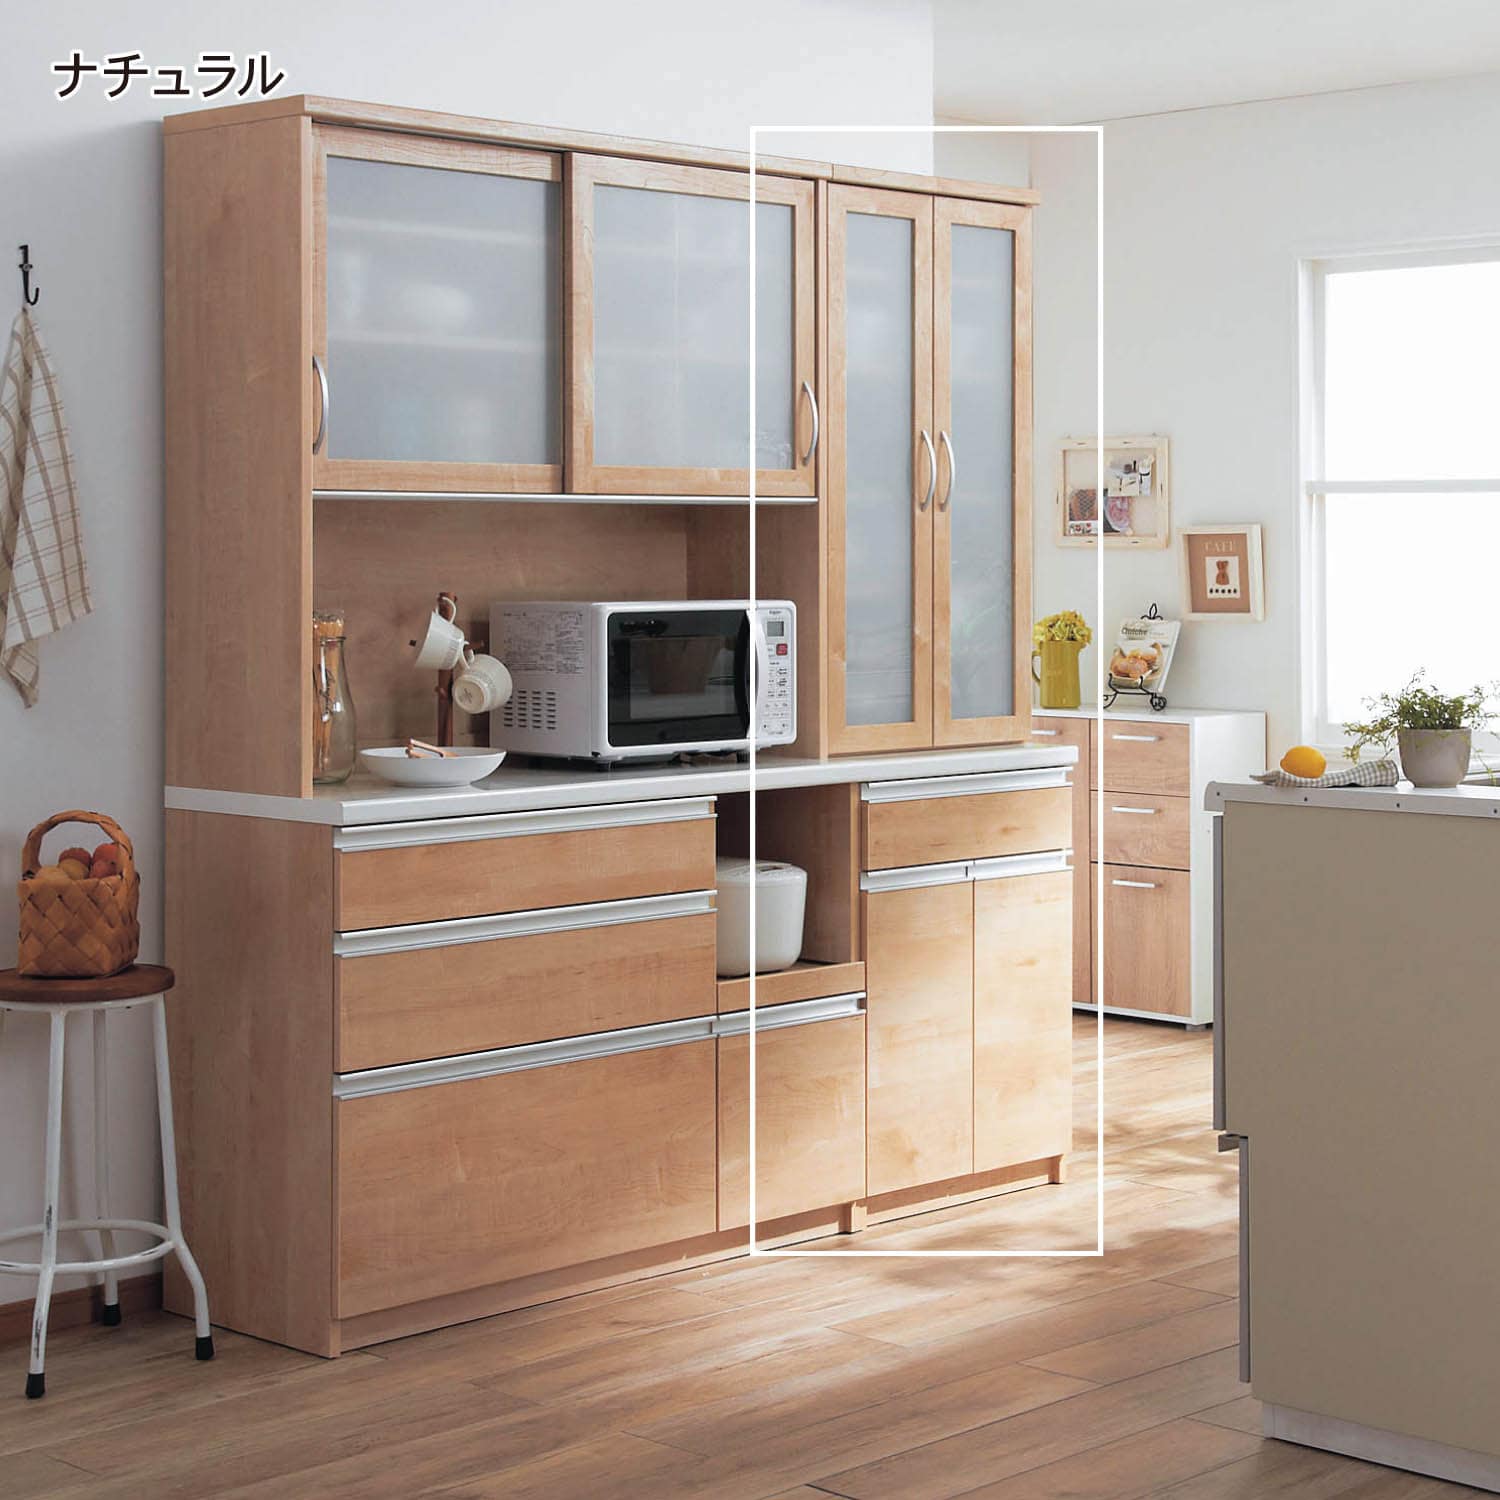 とっておきし福袋 通販生活 カタログハウス 日本製食器棚 MKマエダ家具 